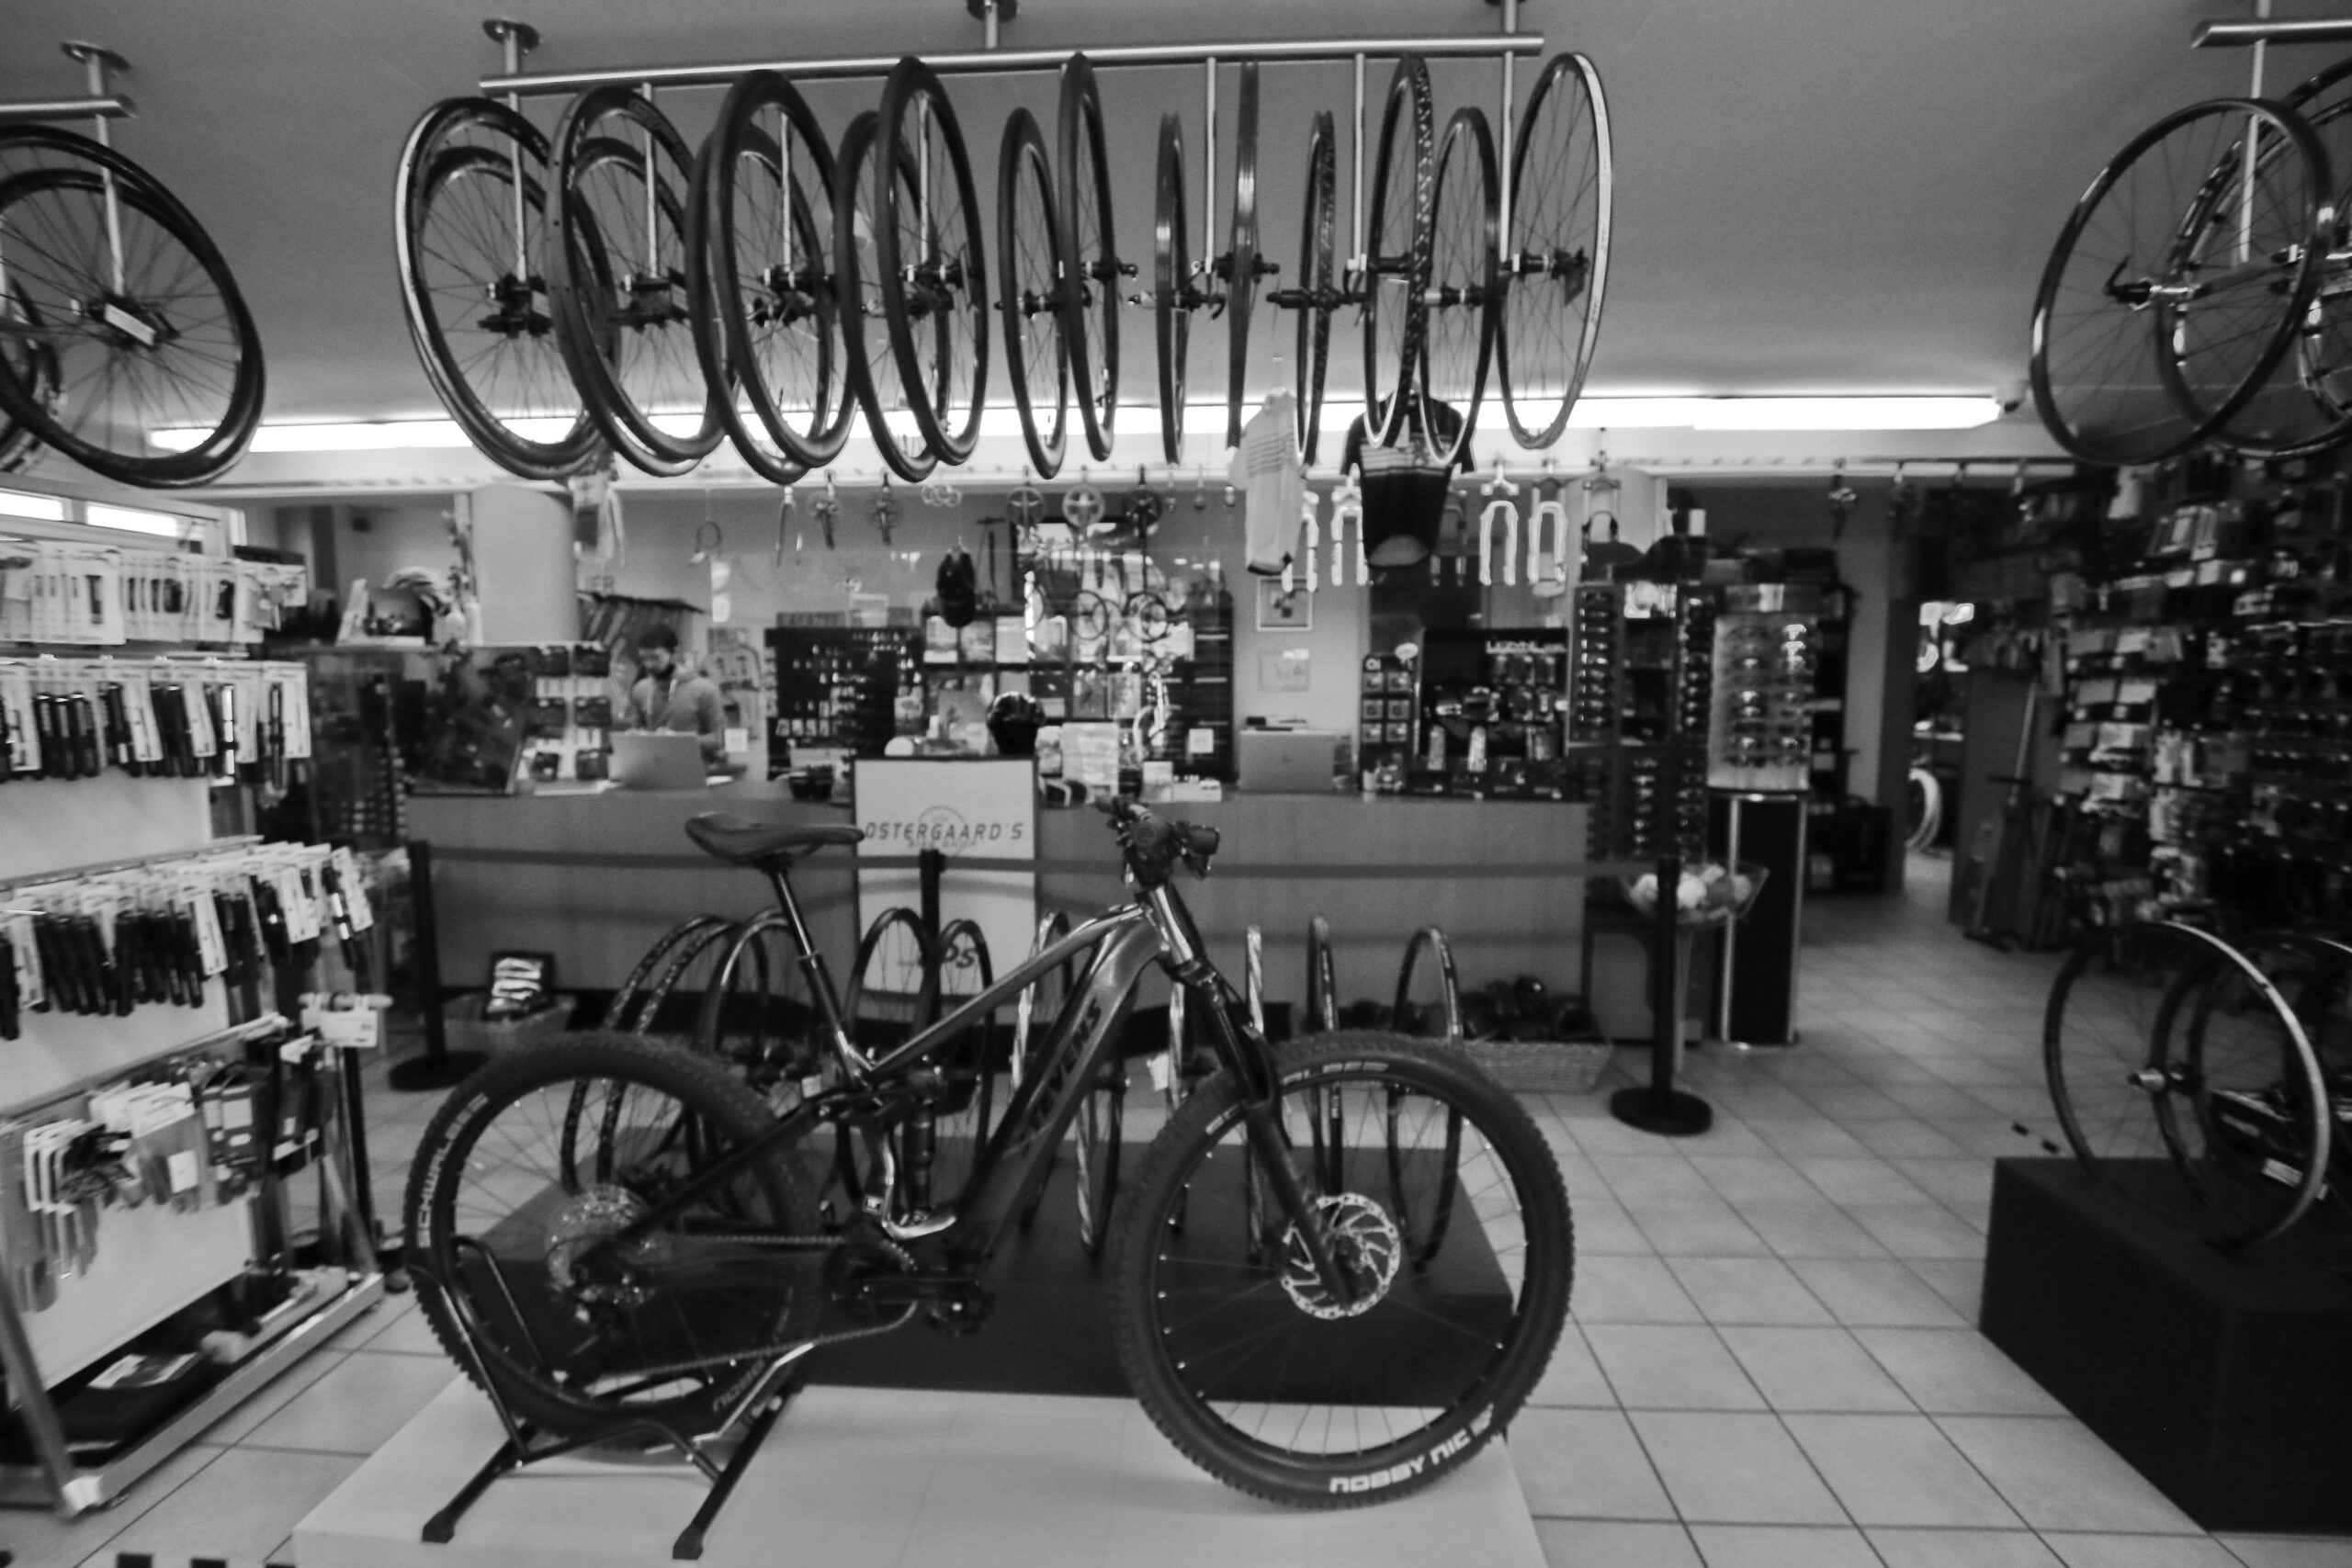 Ostergaards bike shop